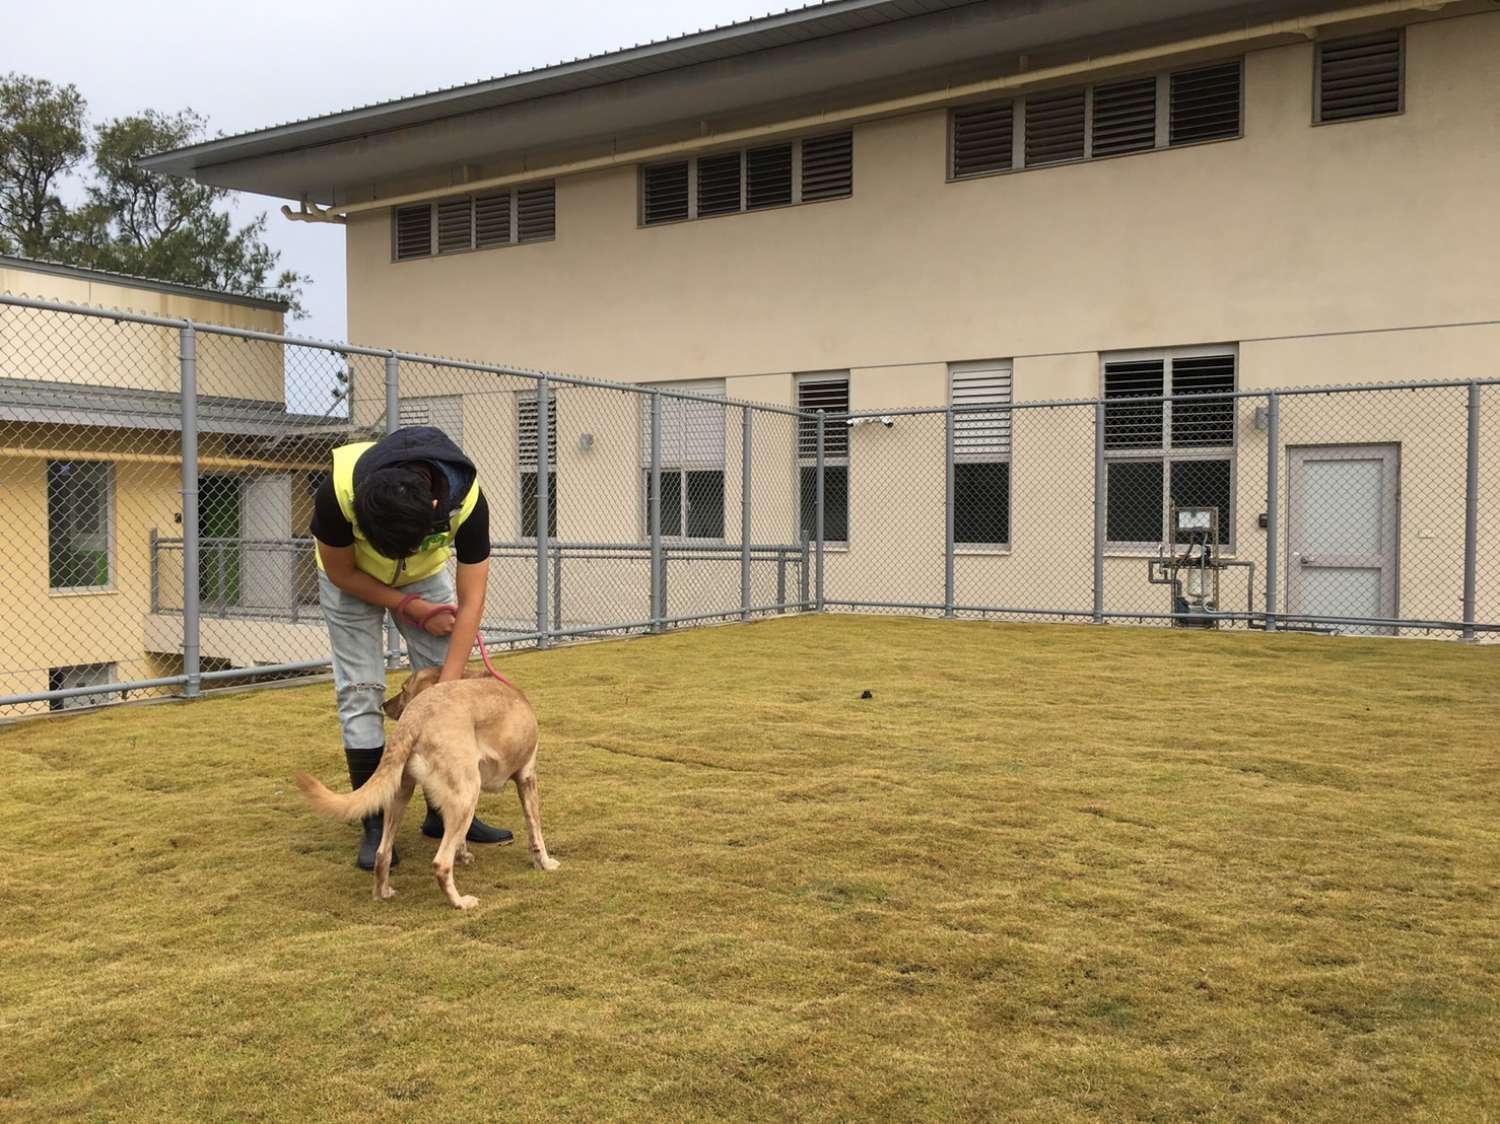 毛寶貝空間變5倍!新竹市動物保護教育園區下周六啟用 可收容超過400隻犬貓2